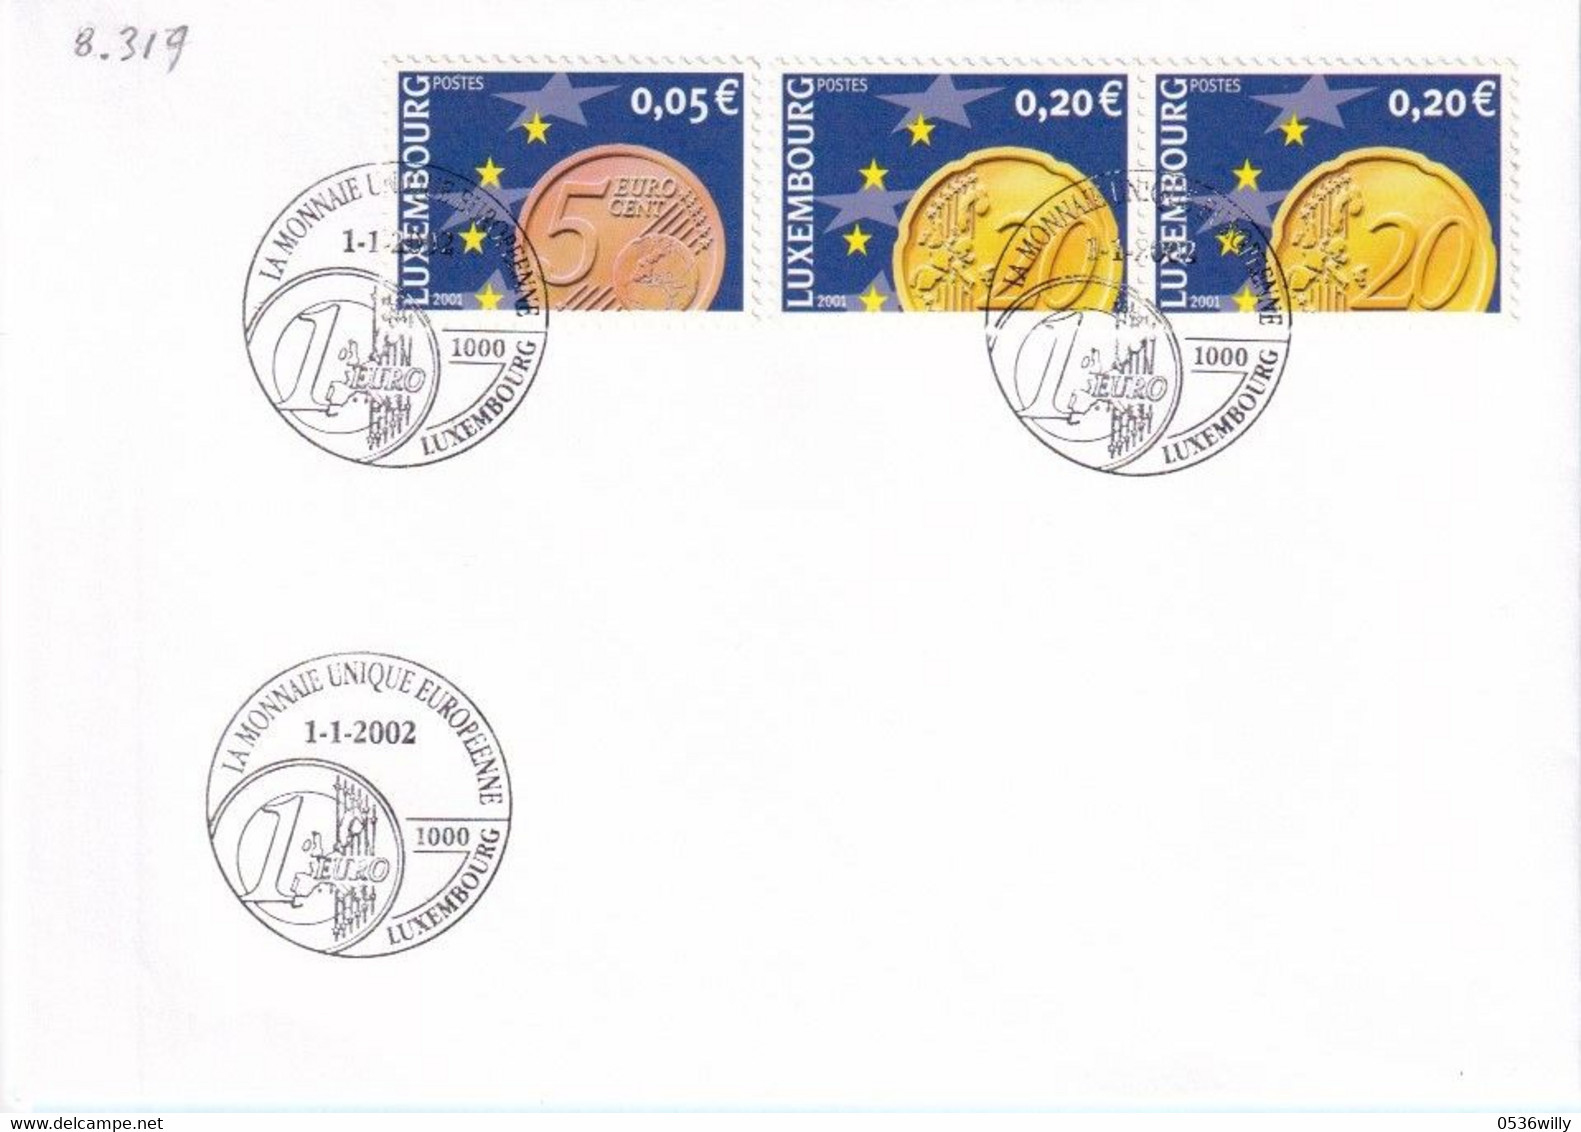 Luxembourg - La Monnaie Unique Européenne (8.319) - Covers & Documents